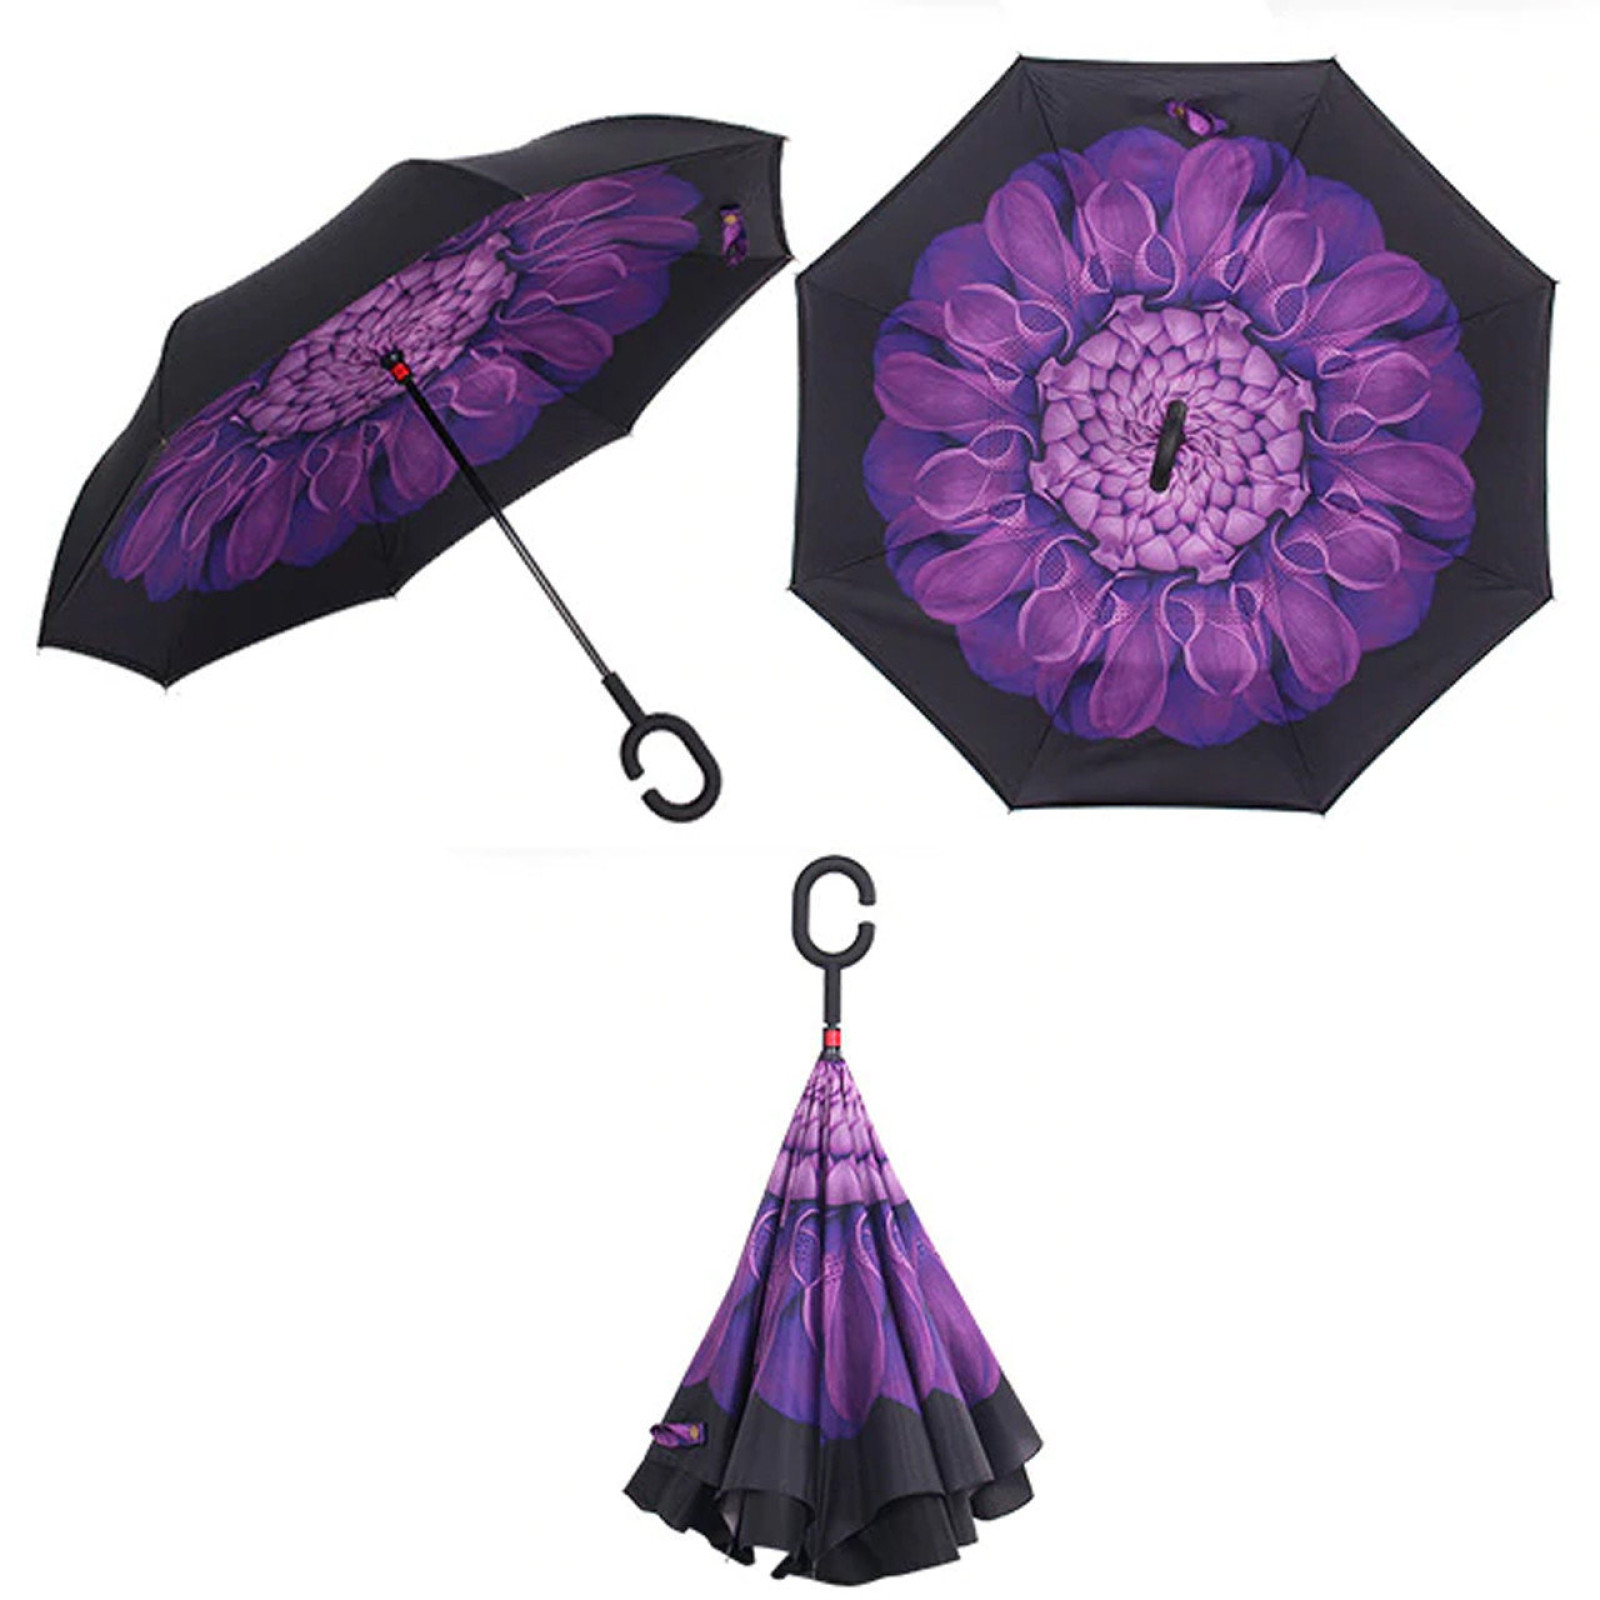 Зонт обратного сложения, антизонт, умный зонт, зонт наоборот Up Brella Цветок Фиолетовый 154304